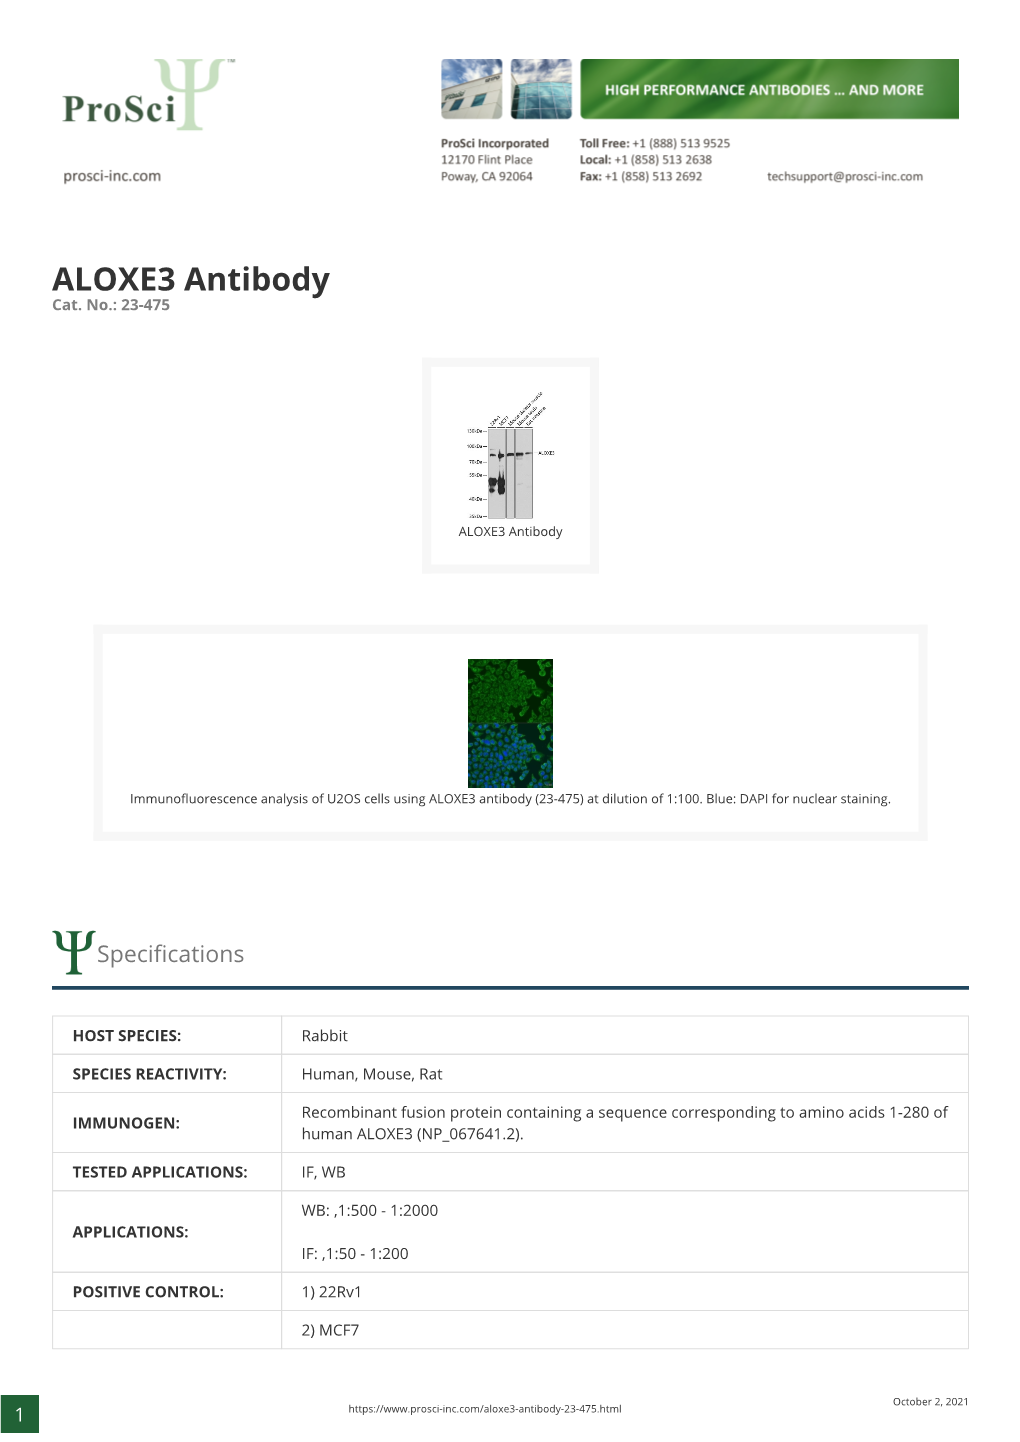 ALOXE3 Antibody Cat